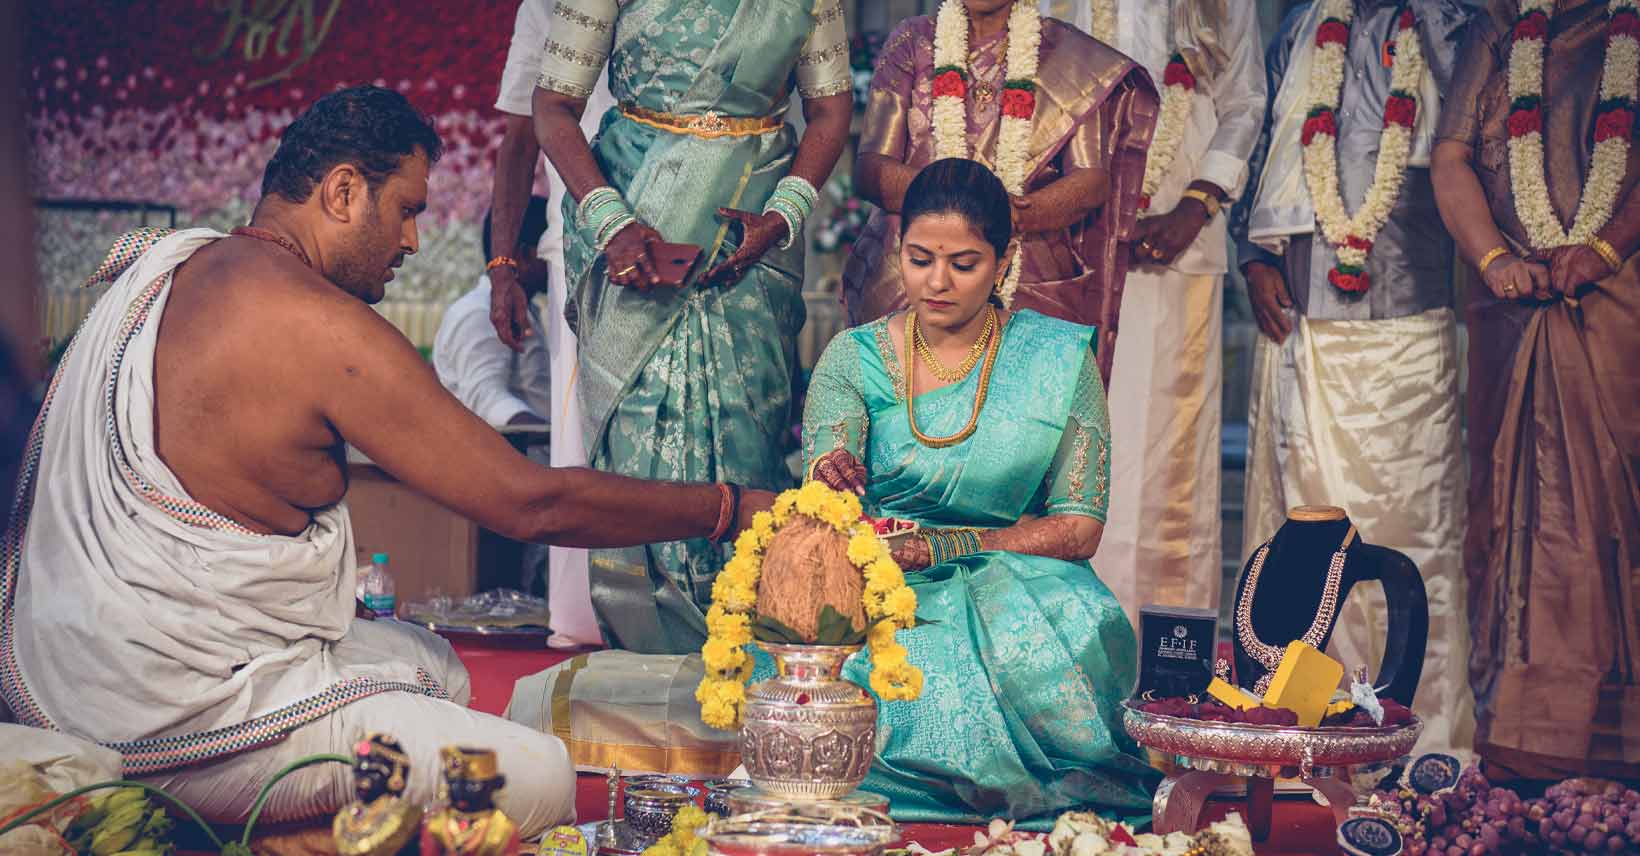 W dzisiejszym wpisie spacerkiem oprowadzam po meandrach tamilskiej ceremonii zaślubin. Dlaczego tak wielu obcokrajowców chce w niej uczestniczyć w rolach głównych?